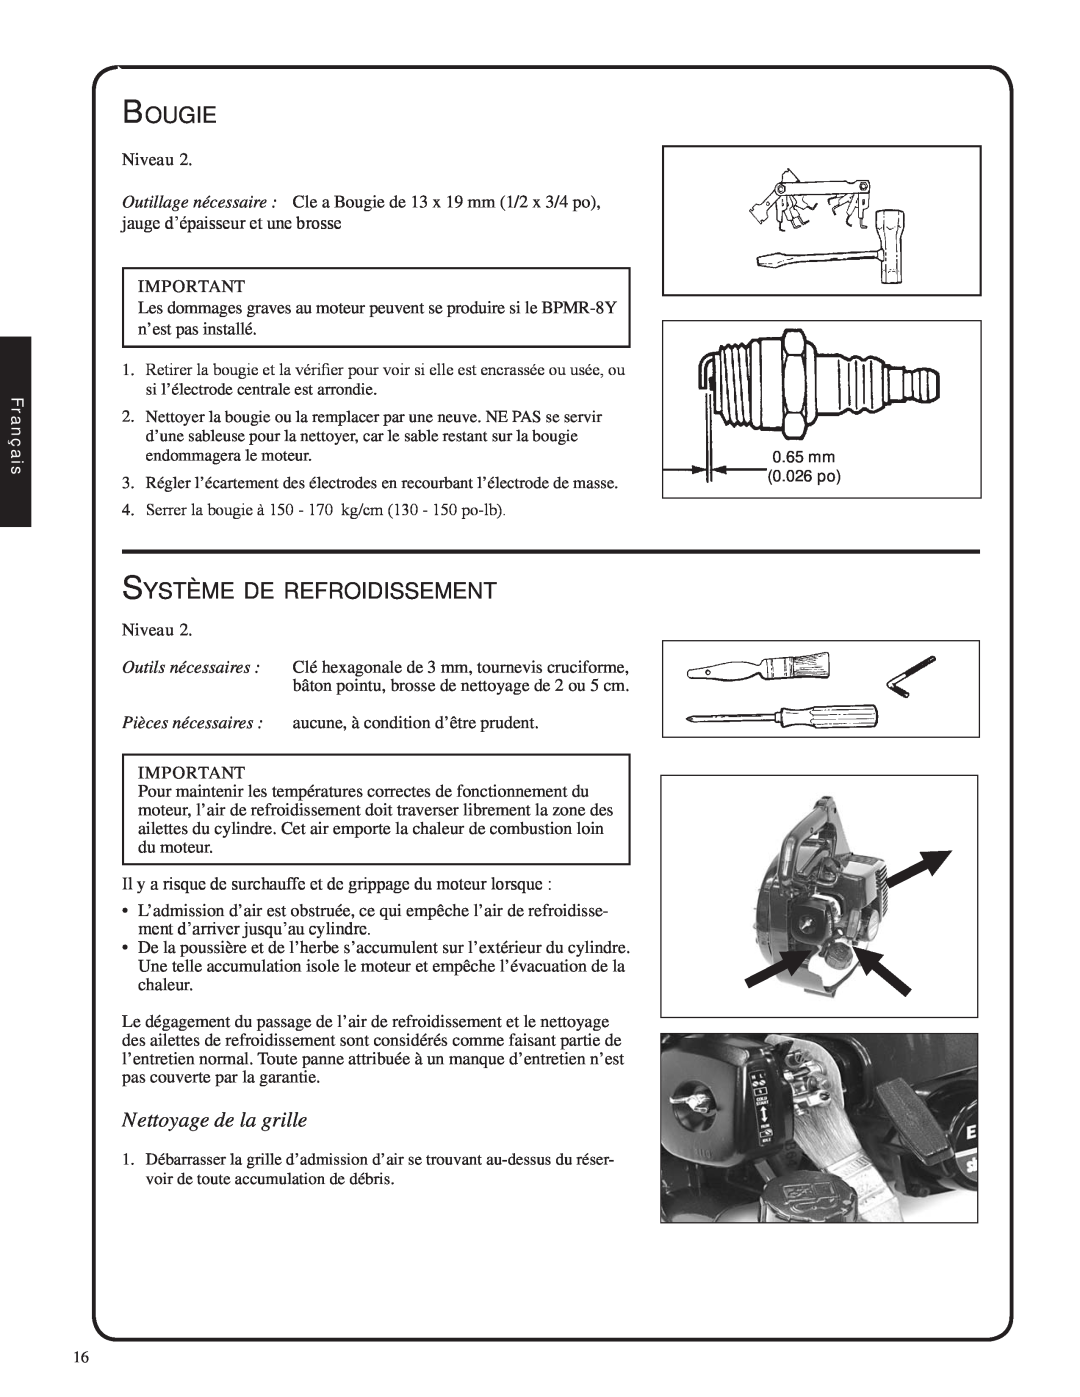 Shindaiwa EB212, 82051 manual Bougie, Système de refroidissement, Nettoyage de la grille, Français 